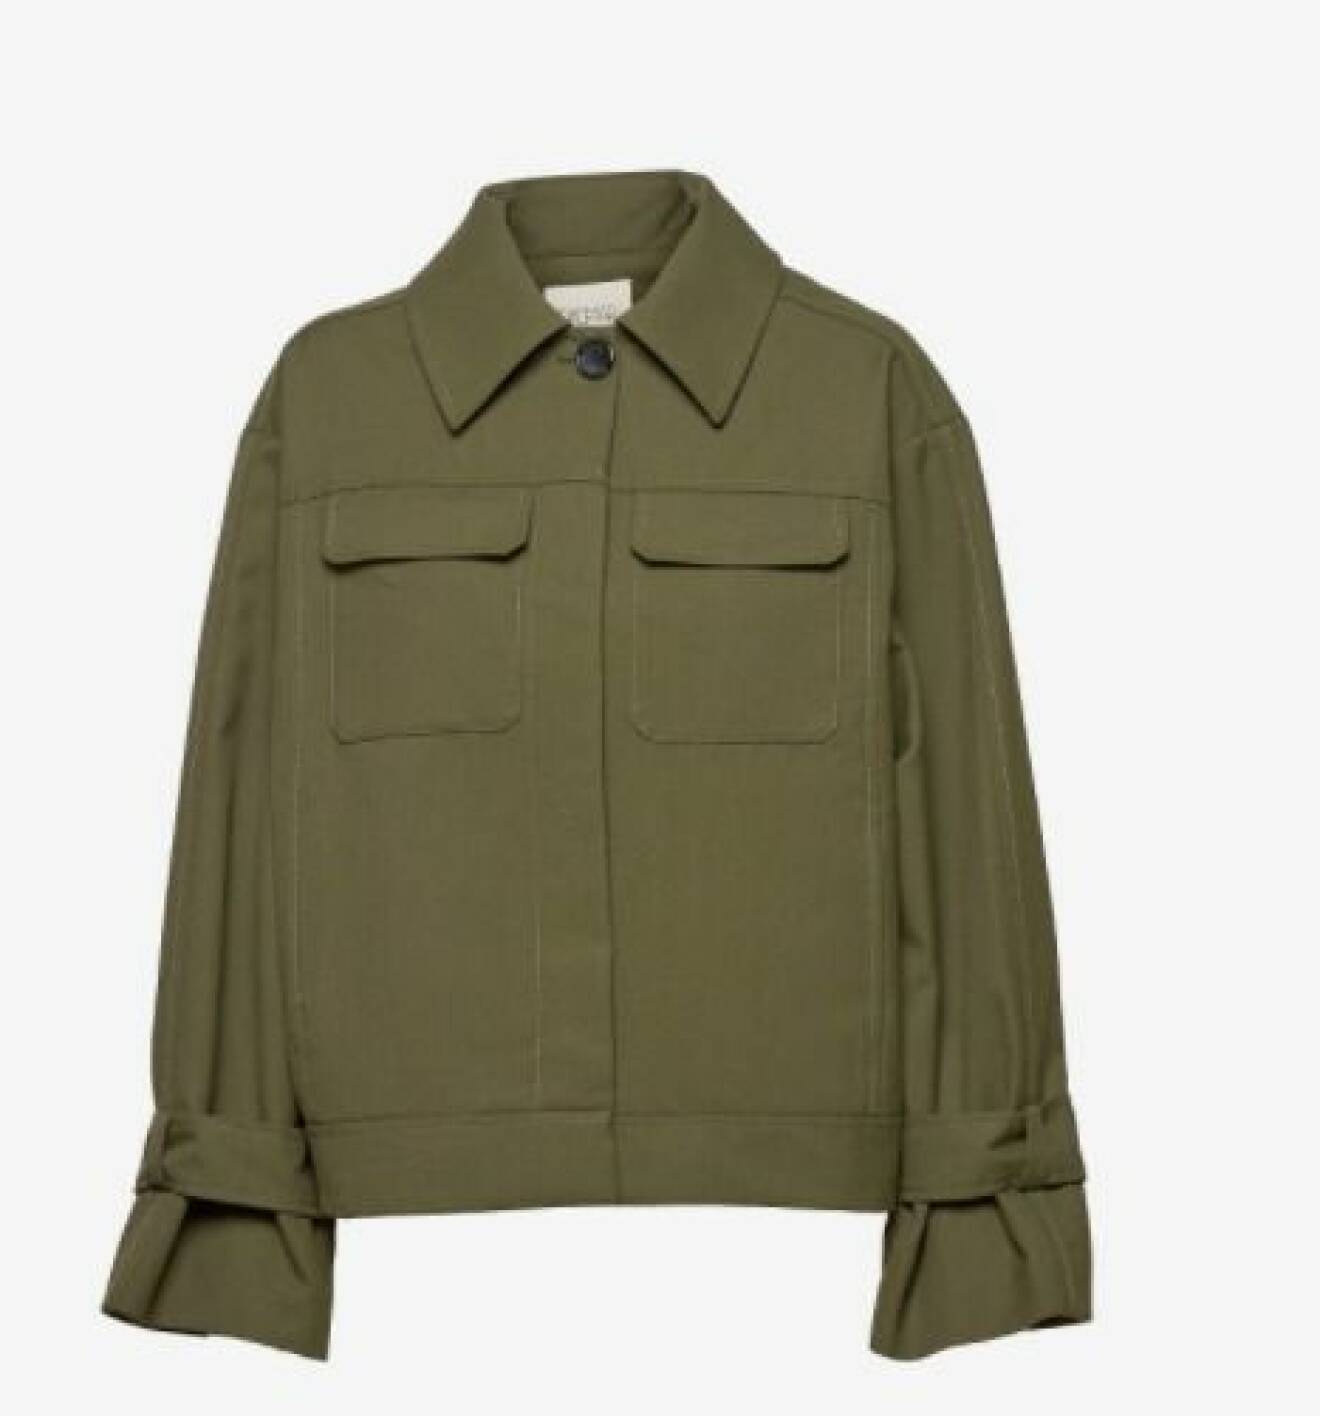 Militärgrön jacka med fickor på brösten. Jackan är dressad med krage och band i ärmsluten. Jacka från Dagmar.